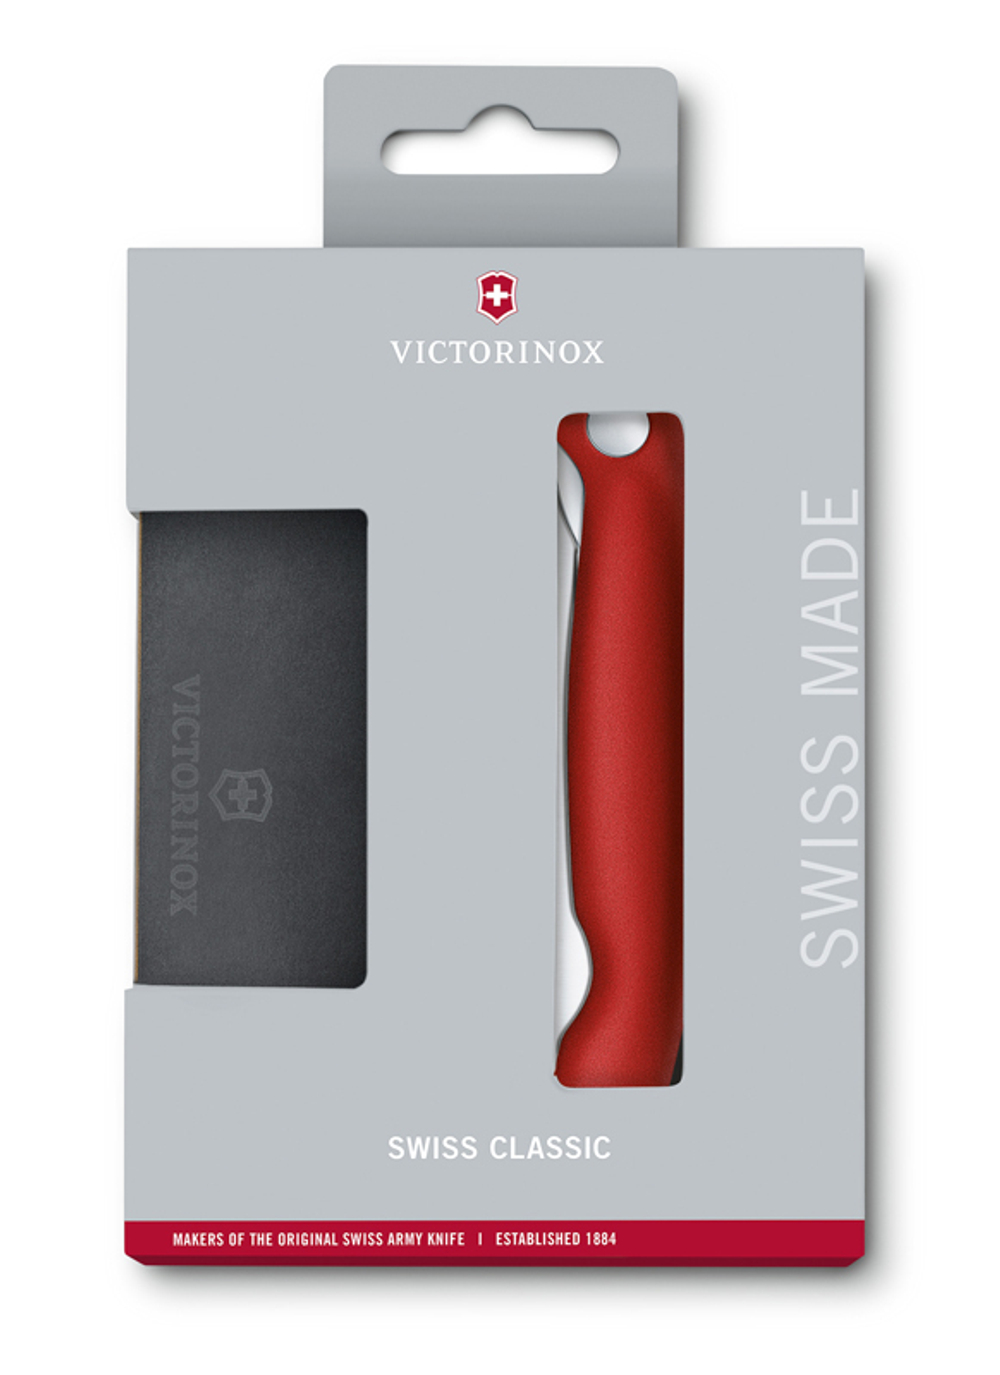 Набор VICTORINOX Swiss Classic с разделочной доской красная рукоять 6.7191.F1